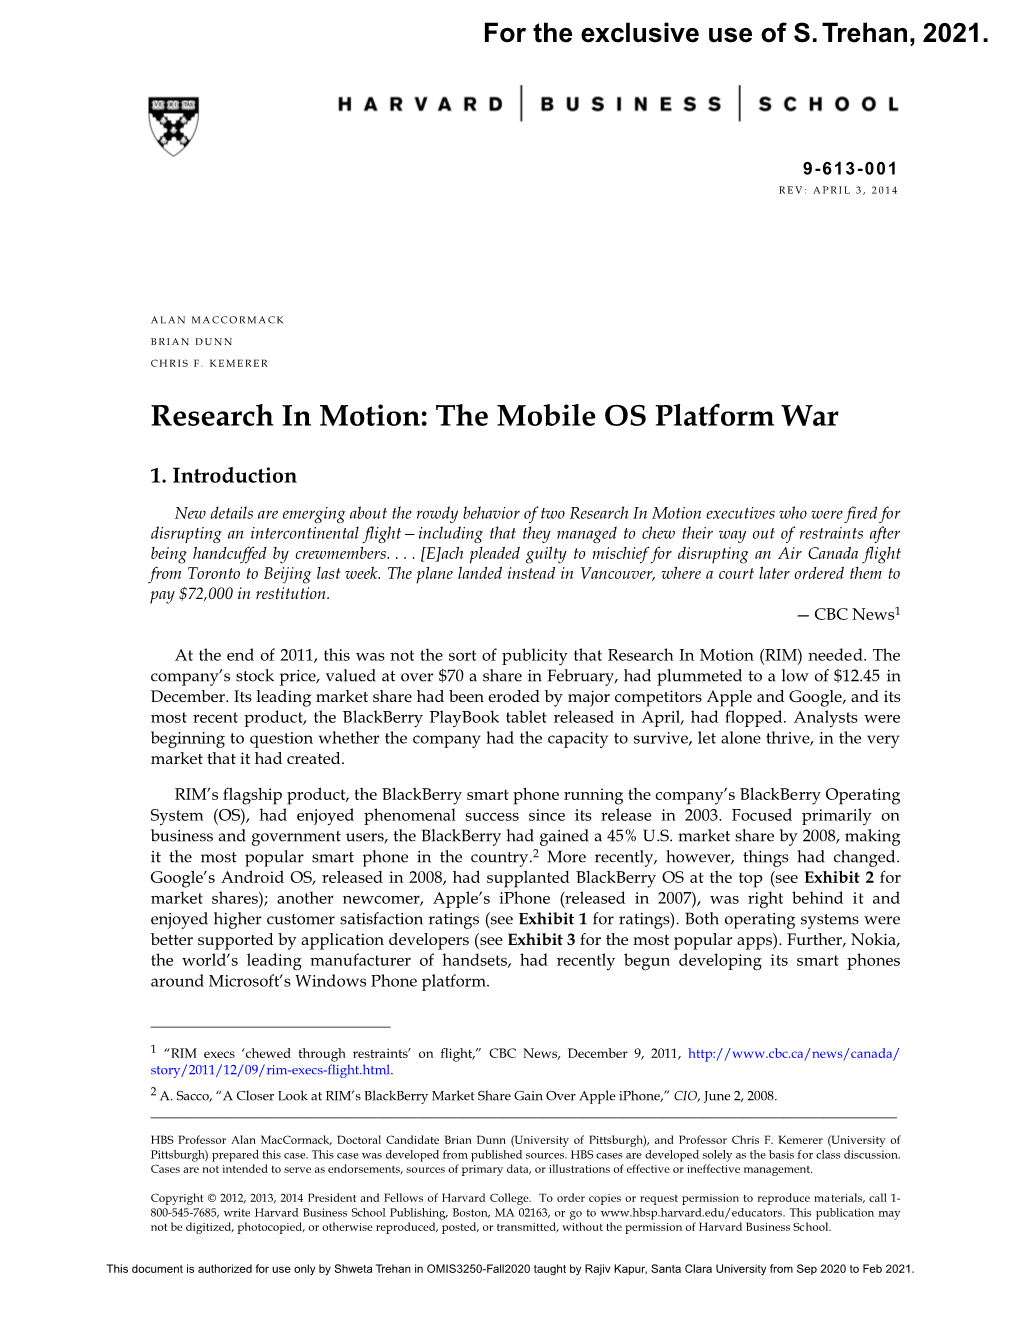 The Mobile OS Platform War